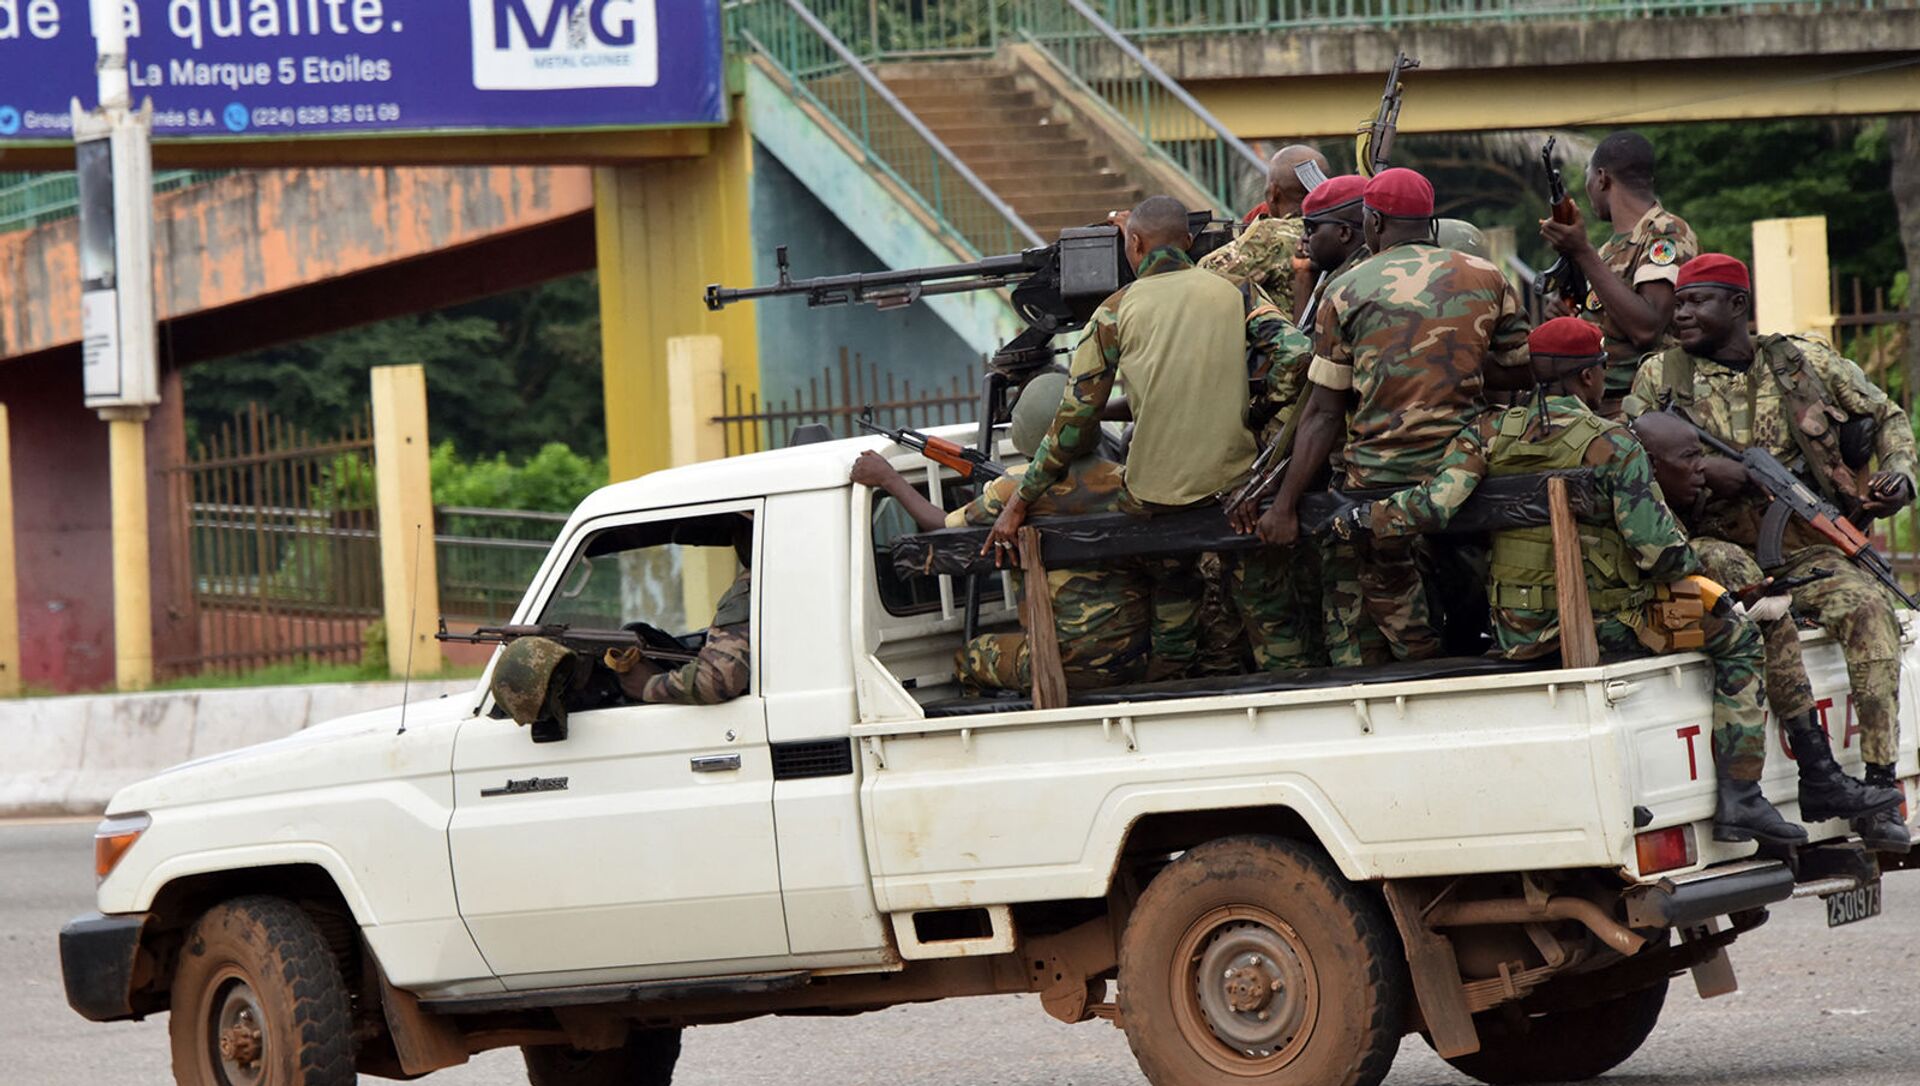 Các quân nhân LLVT Guinea chạy xe qua khu vực trung tâm Caloum ở thủ đô Conakry sau khi nghe thấy liên tục có tiếng súng nổ (ngày 5/9/2021) - Sputnik Việt Nam, 1920, 06.09.2021